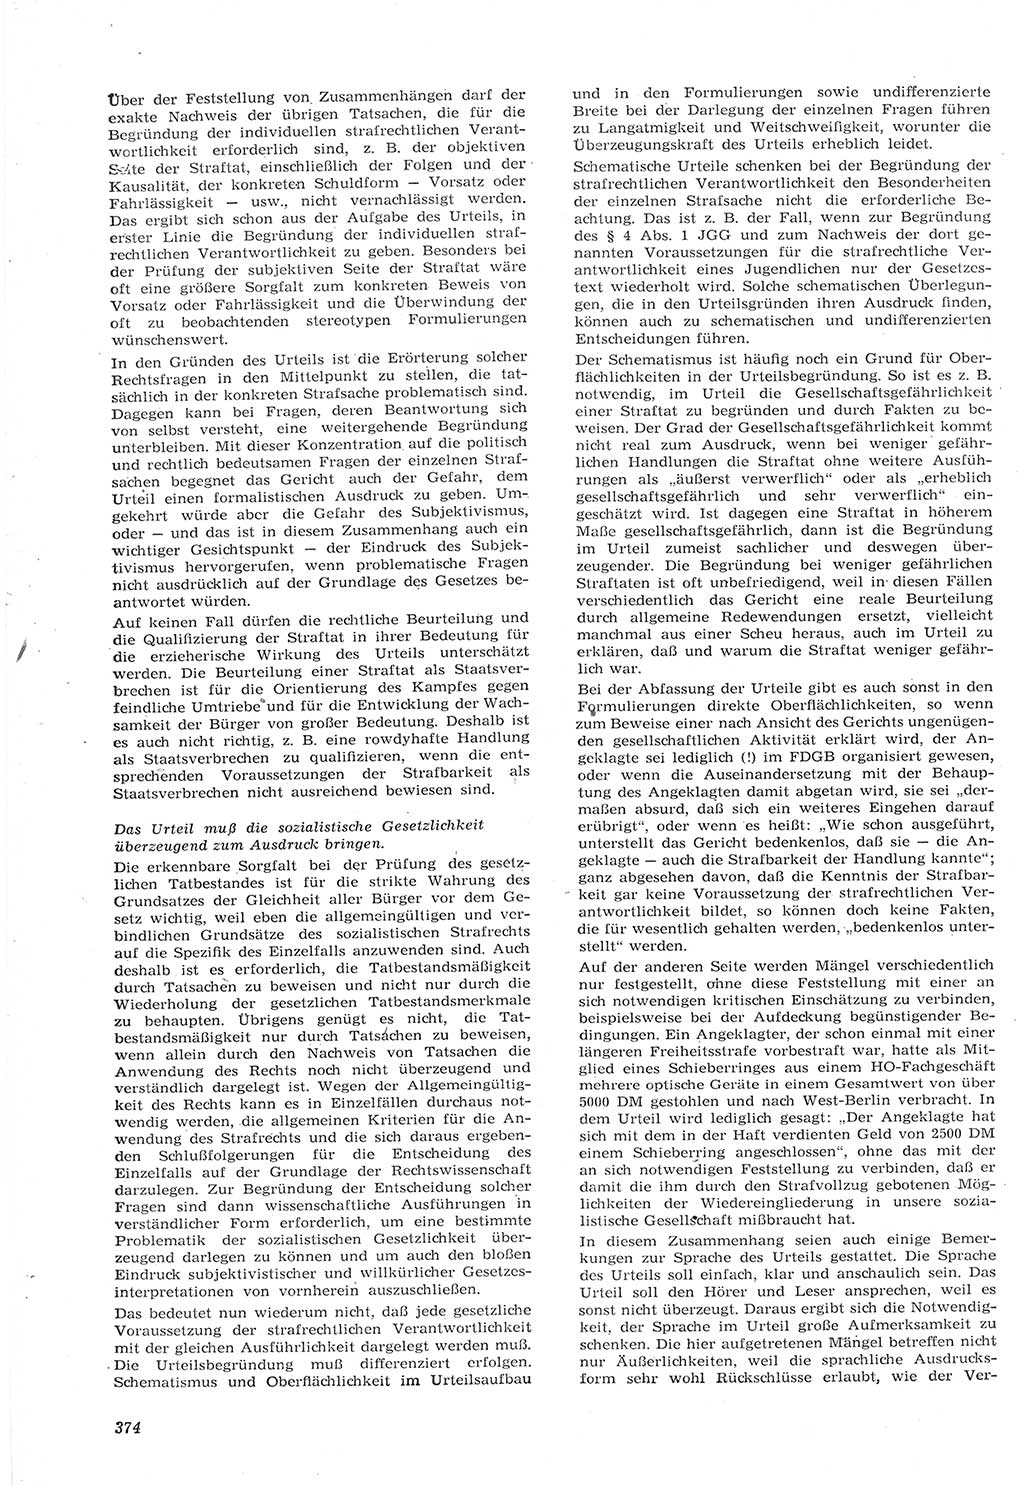 Neue Justiz (NJ), Zeitschrift für Recht und Rechtswissenschaft [Deutsche Demokratische Republik (DDR)], 15. Jahrgang 1961, Seite 374 (NJ DDR 1961, S. 374)